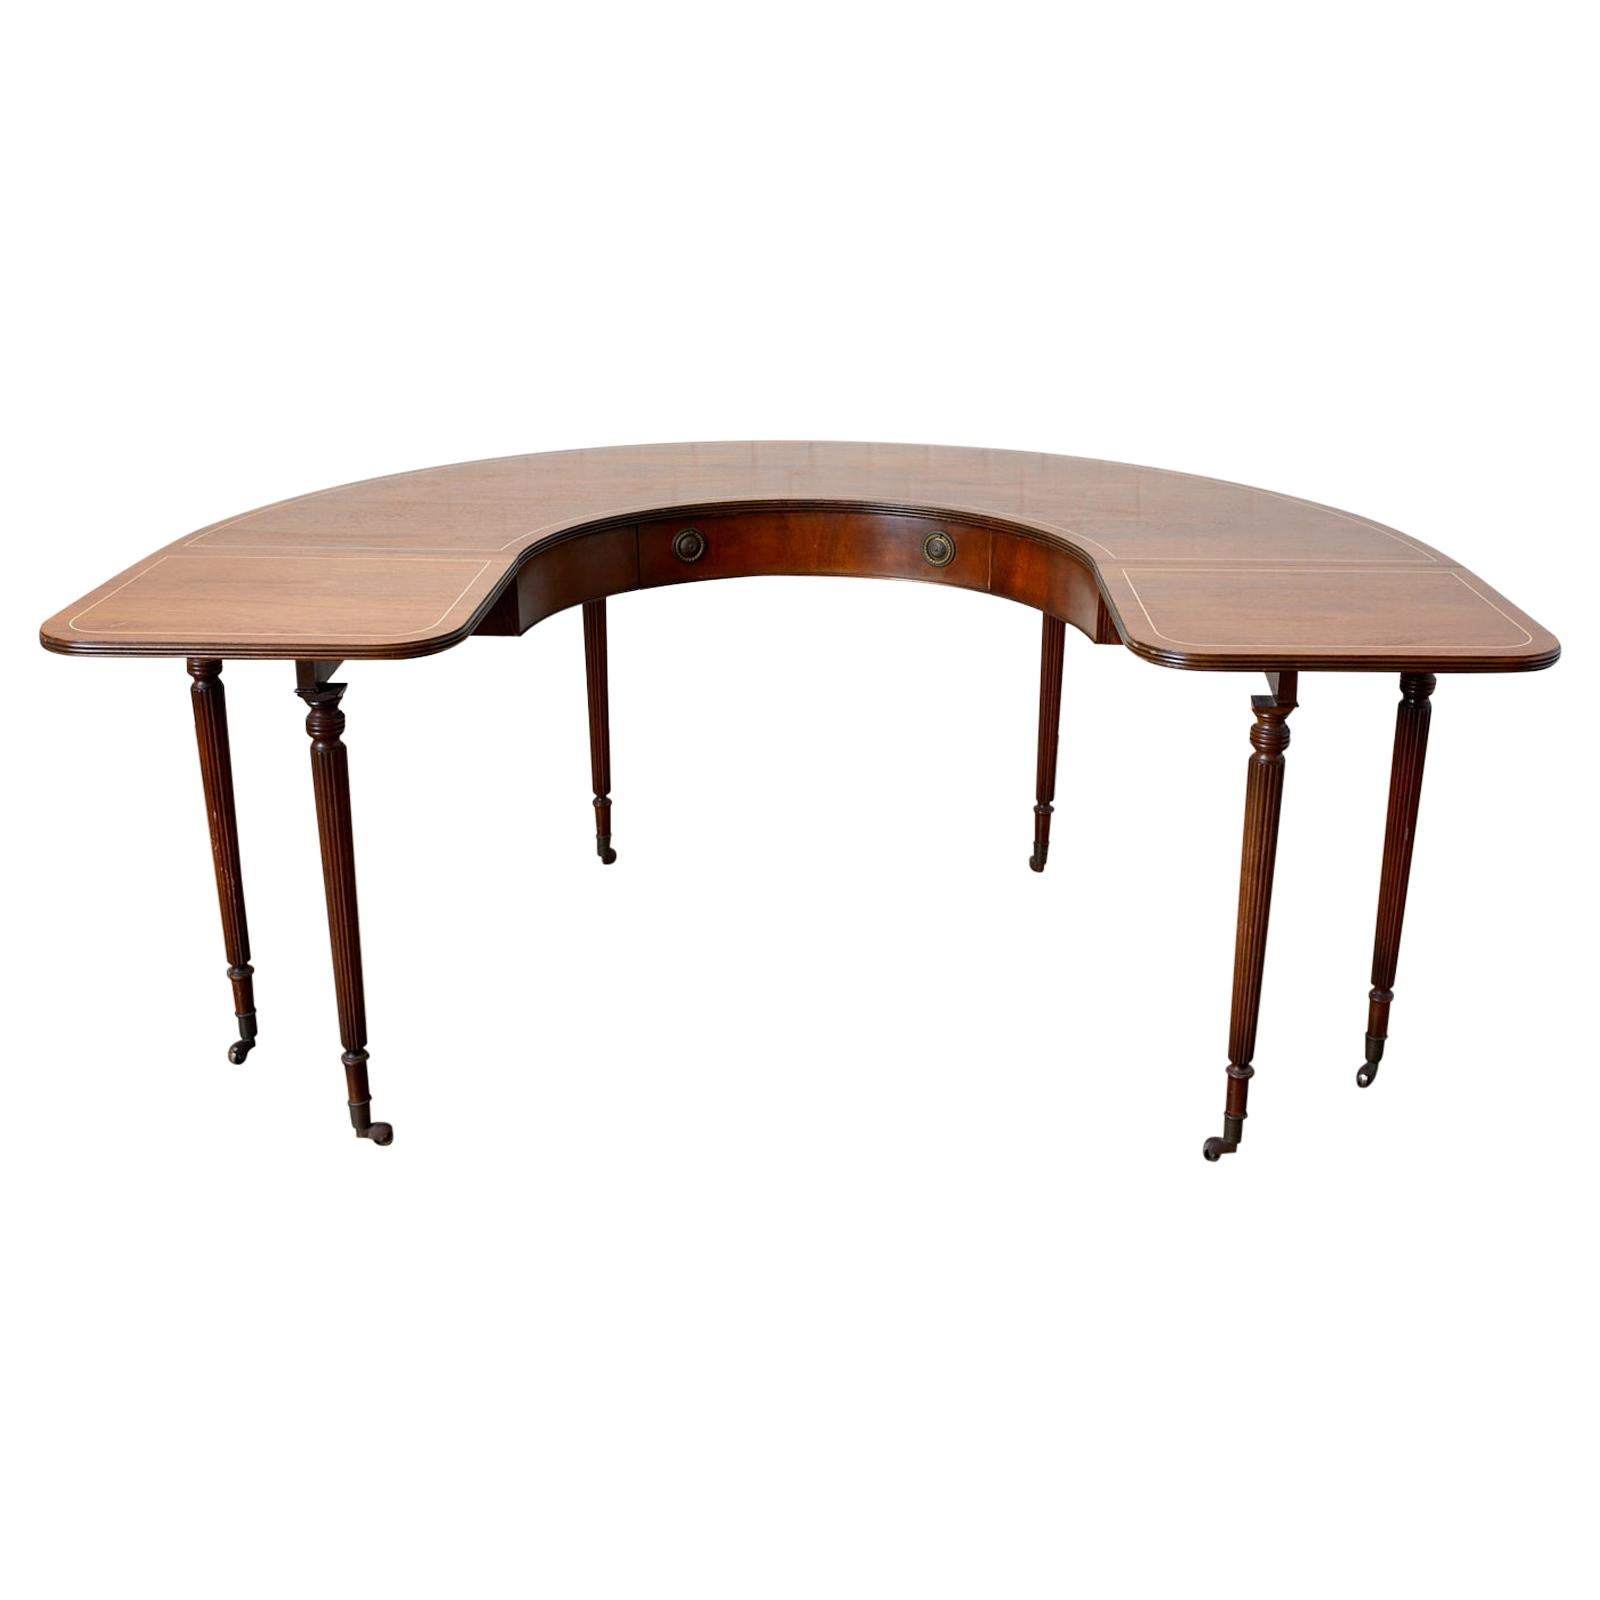 English Regency Style Drop-Leaf Hunt Table or Desk